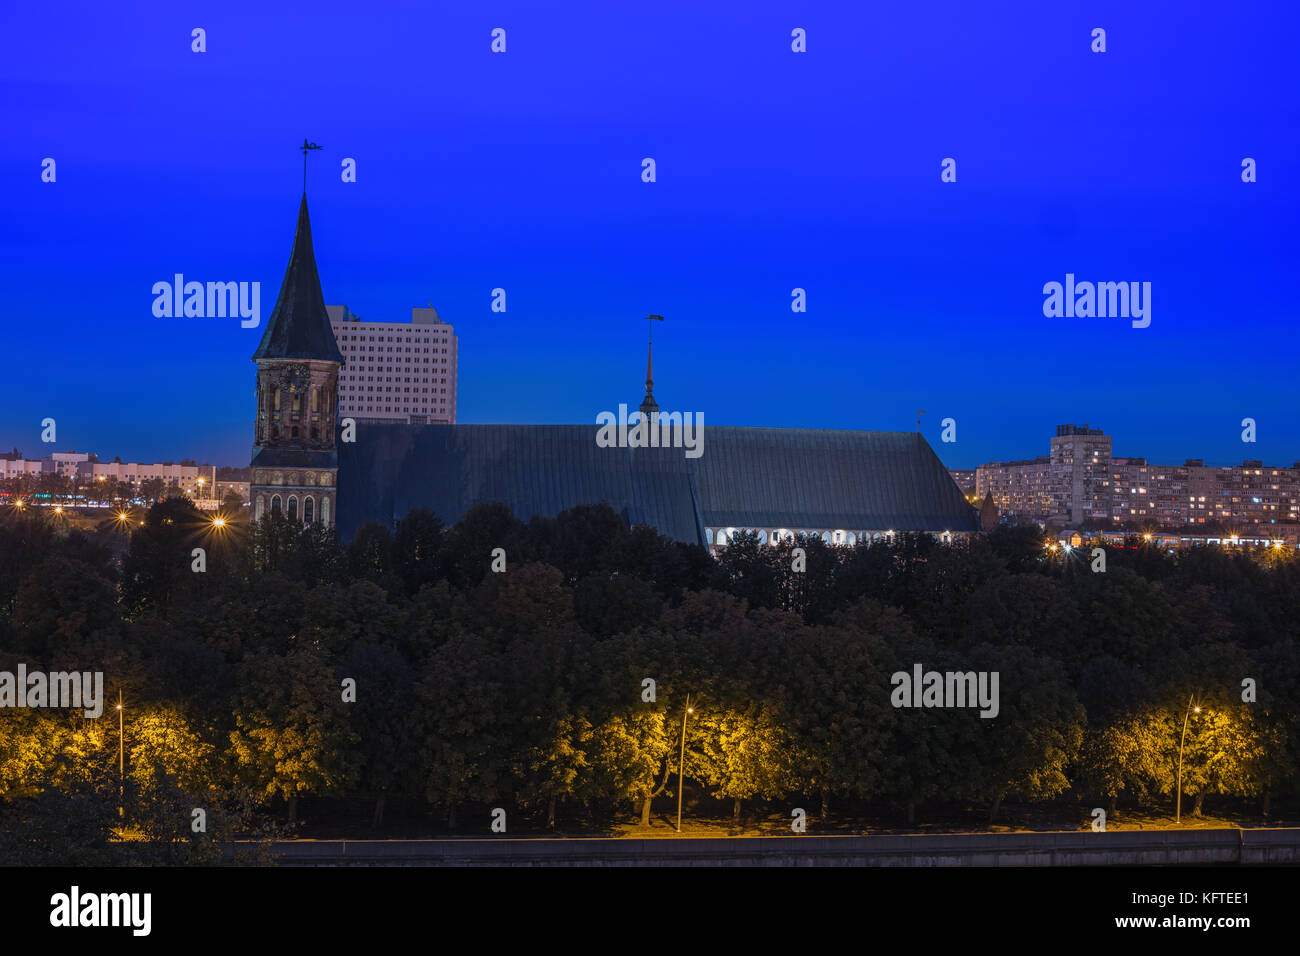 Nacht Stadtbild von Kaliningrad, Russland. gotische Kathedrale in Kaliningrad, ehemals Königsberg, Deutschland. schöne Aussicht auf Kant Insel. Nacht illu Stockfoto